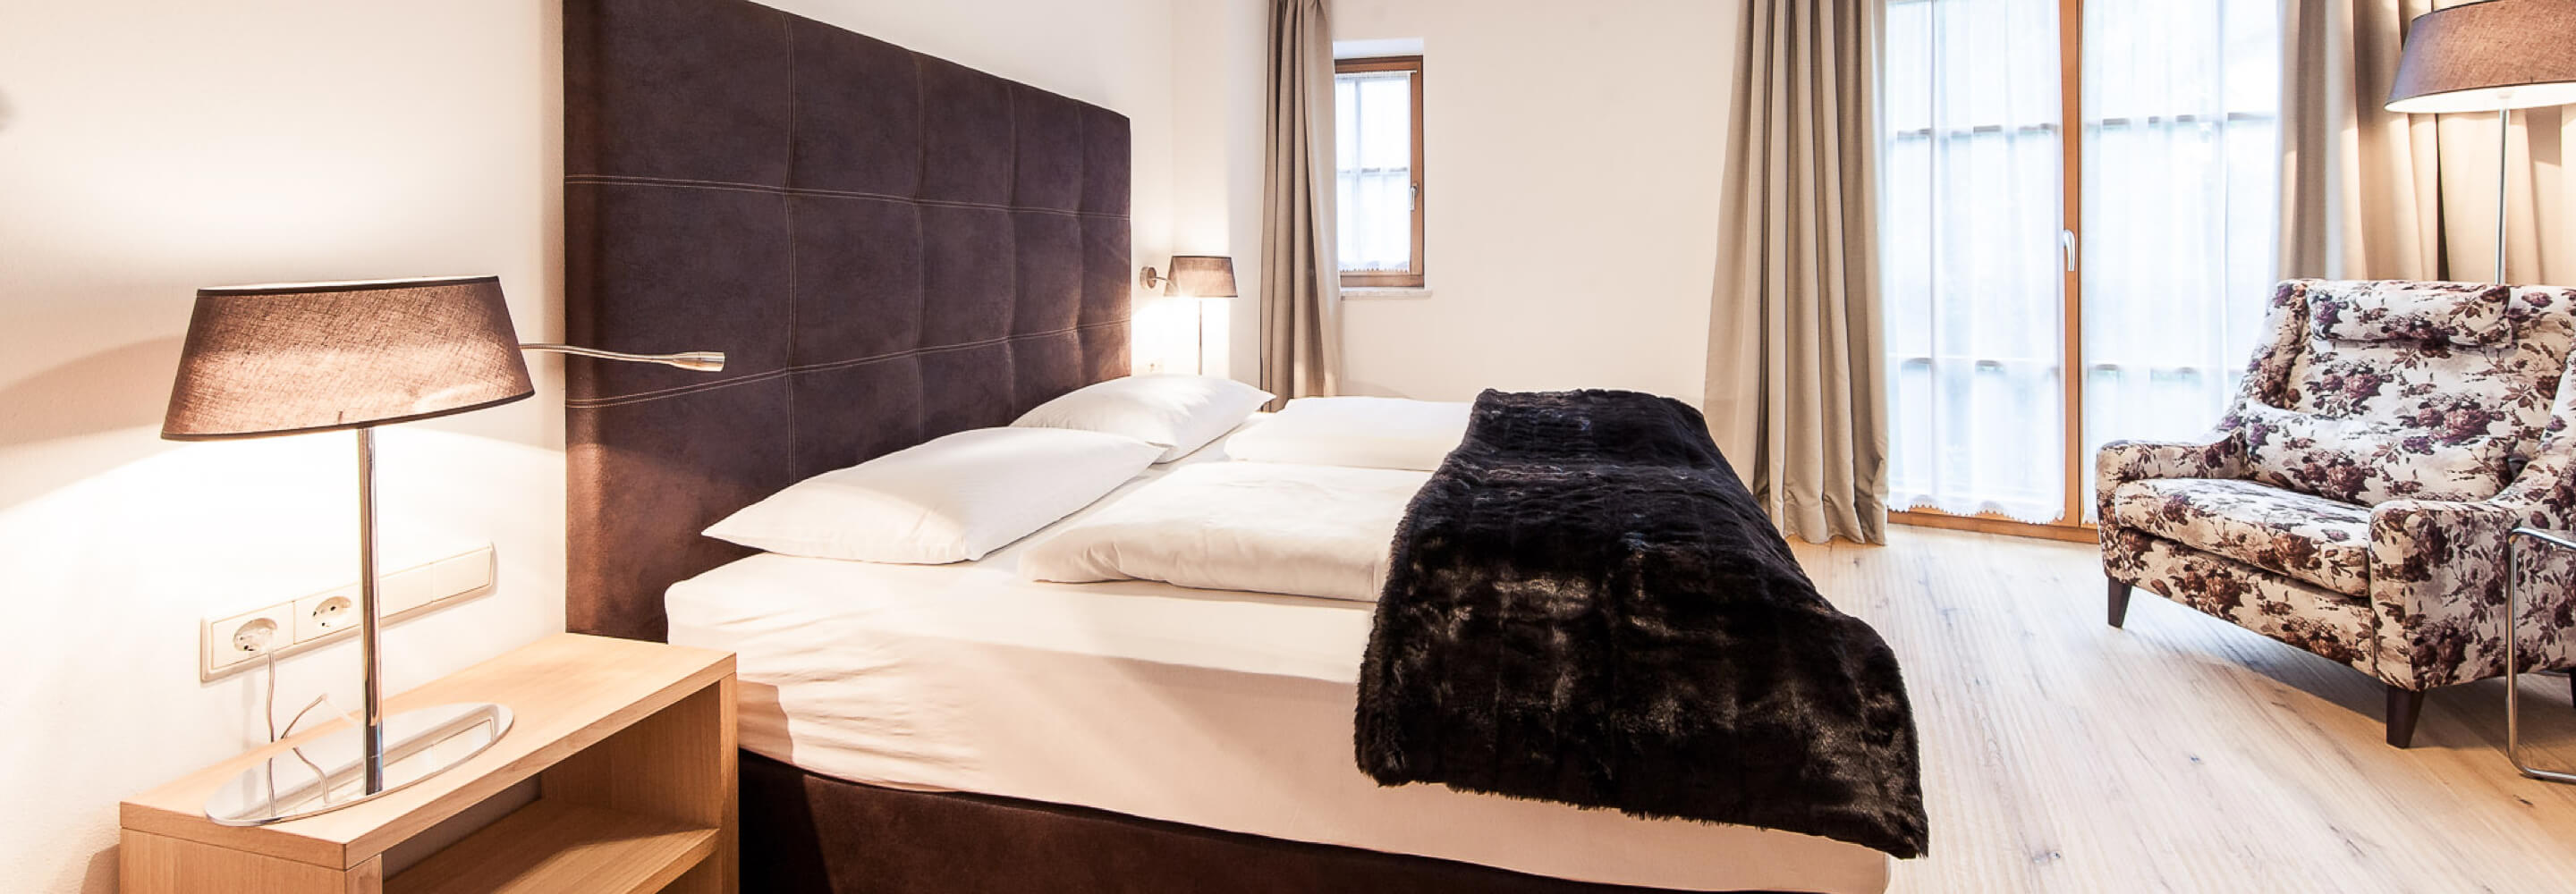 Hotelzimmer mit schönem braunen Bett und gemütlichem Sessel